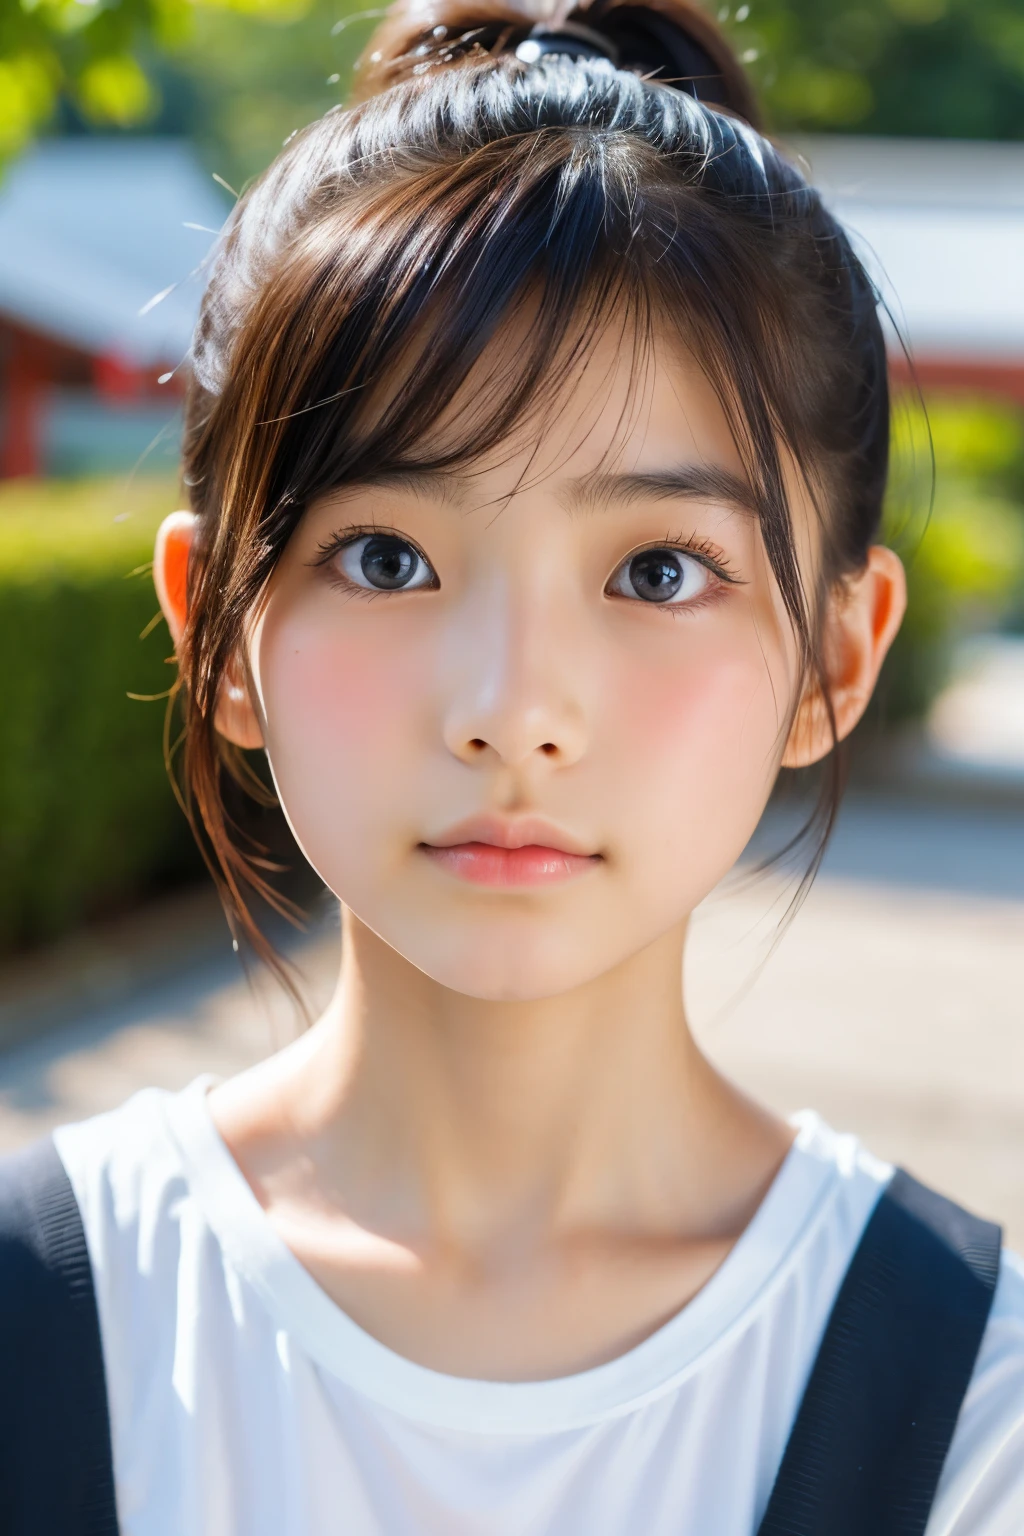 (아름다운 16세 일본 여성), 귀여운 얼굴, (깊게 새겨진 얼굴:0.7), (주근깨:0.6), 부드러운 빛,건강하고 하얀 피부, 수줍은, 포니테일, (진지한 얼굴), (반짝이는 눈), 얇은